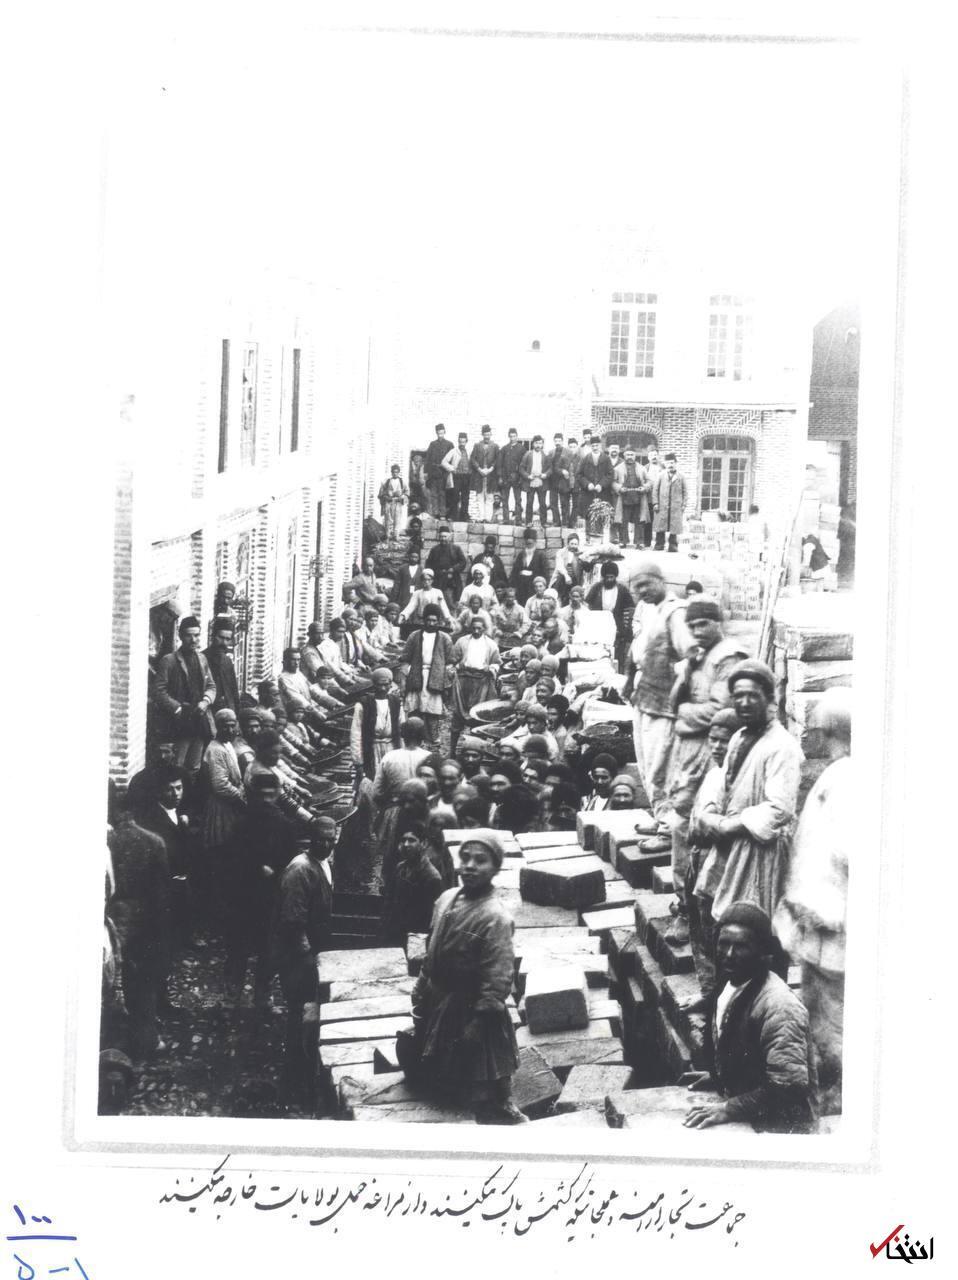 تصویر دیده نشده از تجارت اصلی تجار ارمنی در دوران قاجار